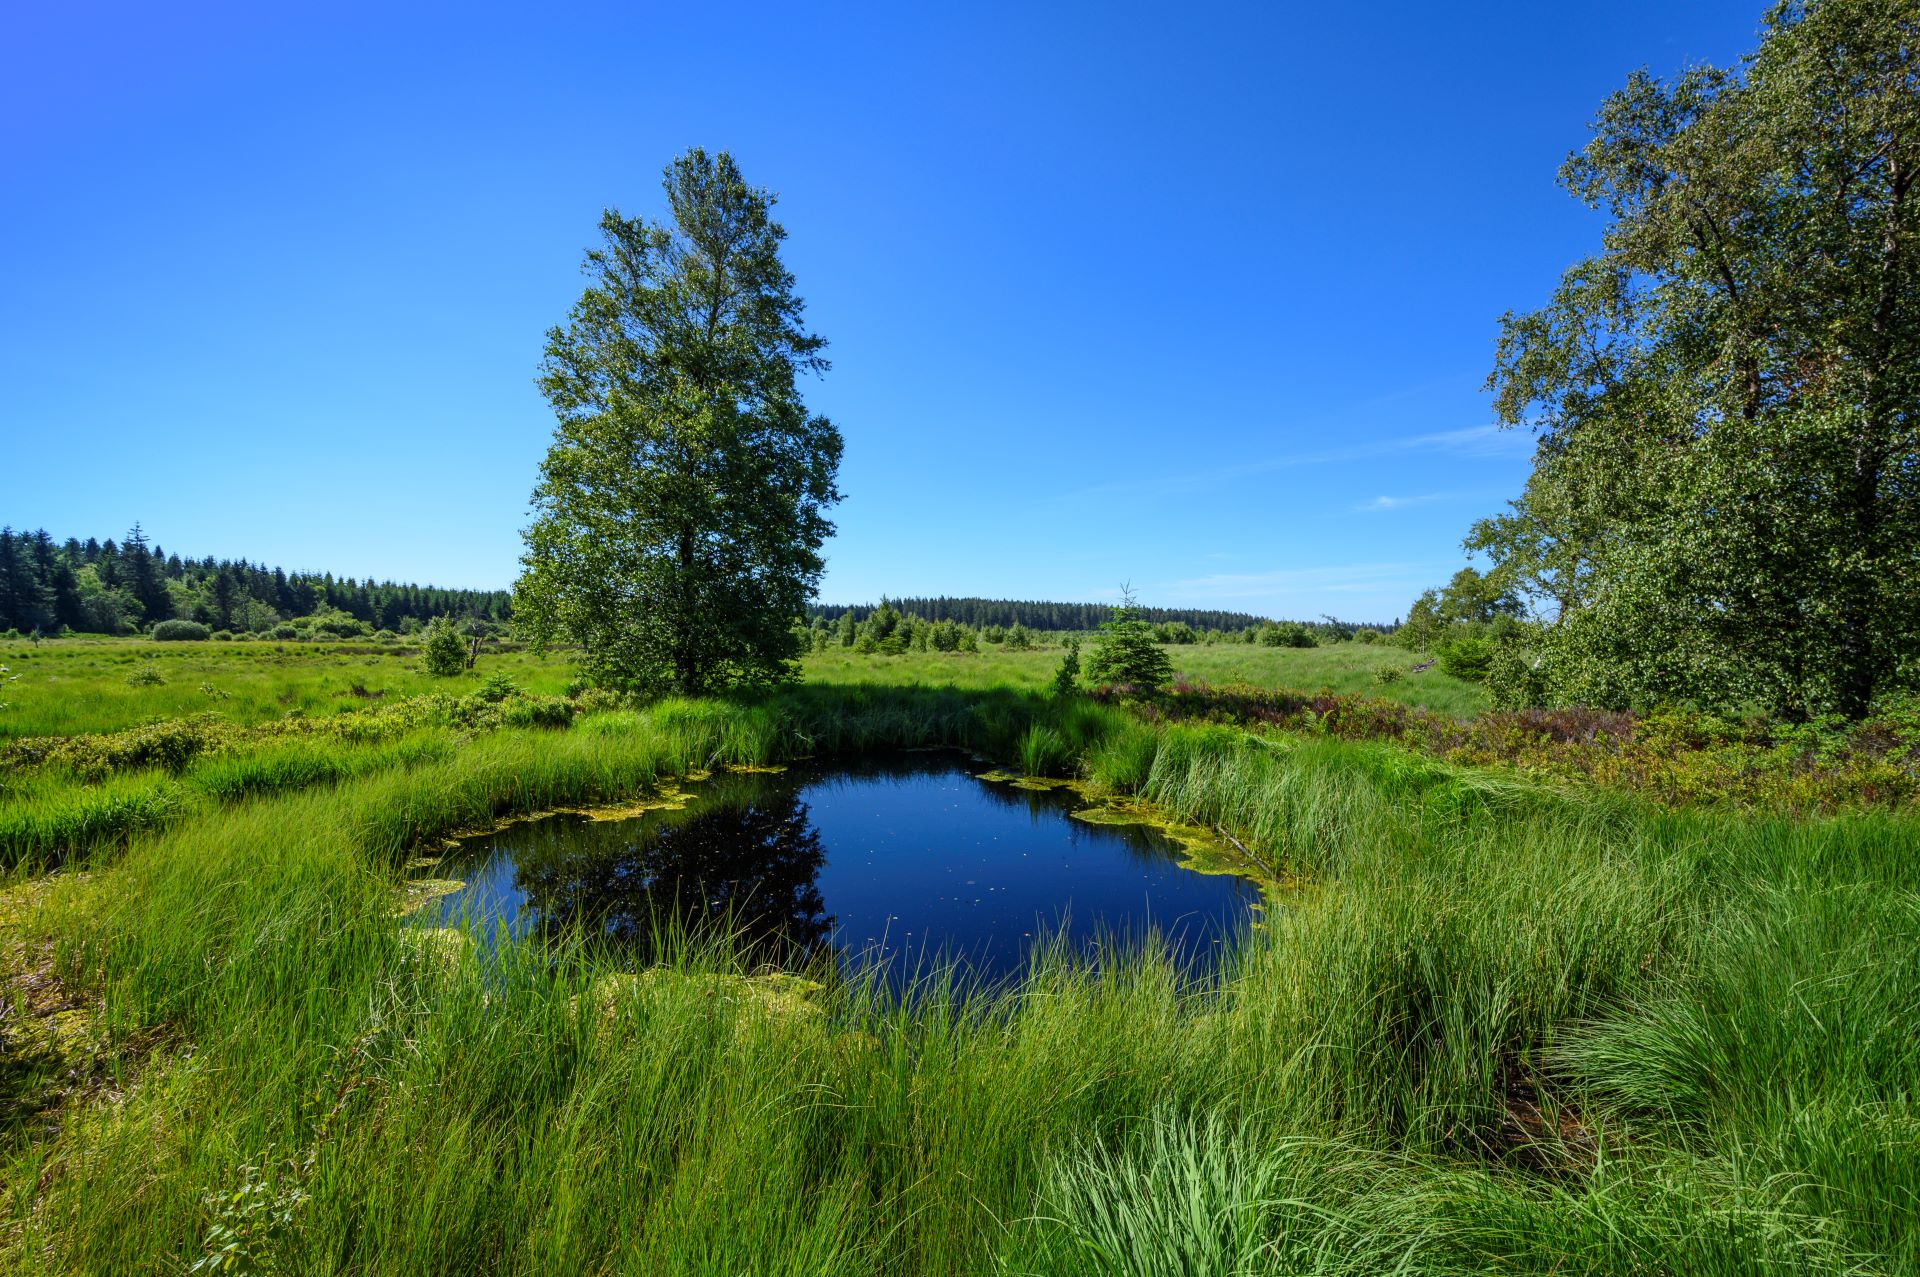 Le ciel bleu se reflète dans un petit étang. Un arbre et de nombreuses herbes sauvages l'entourent.